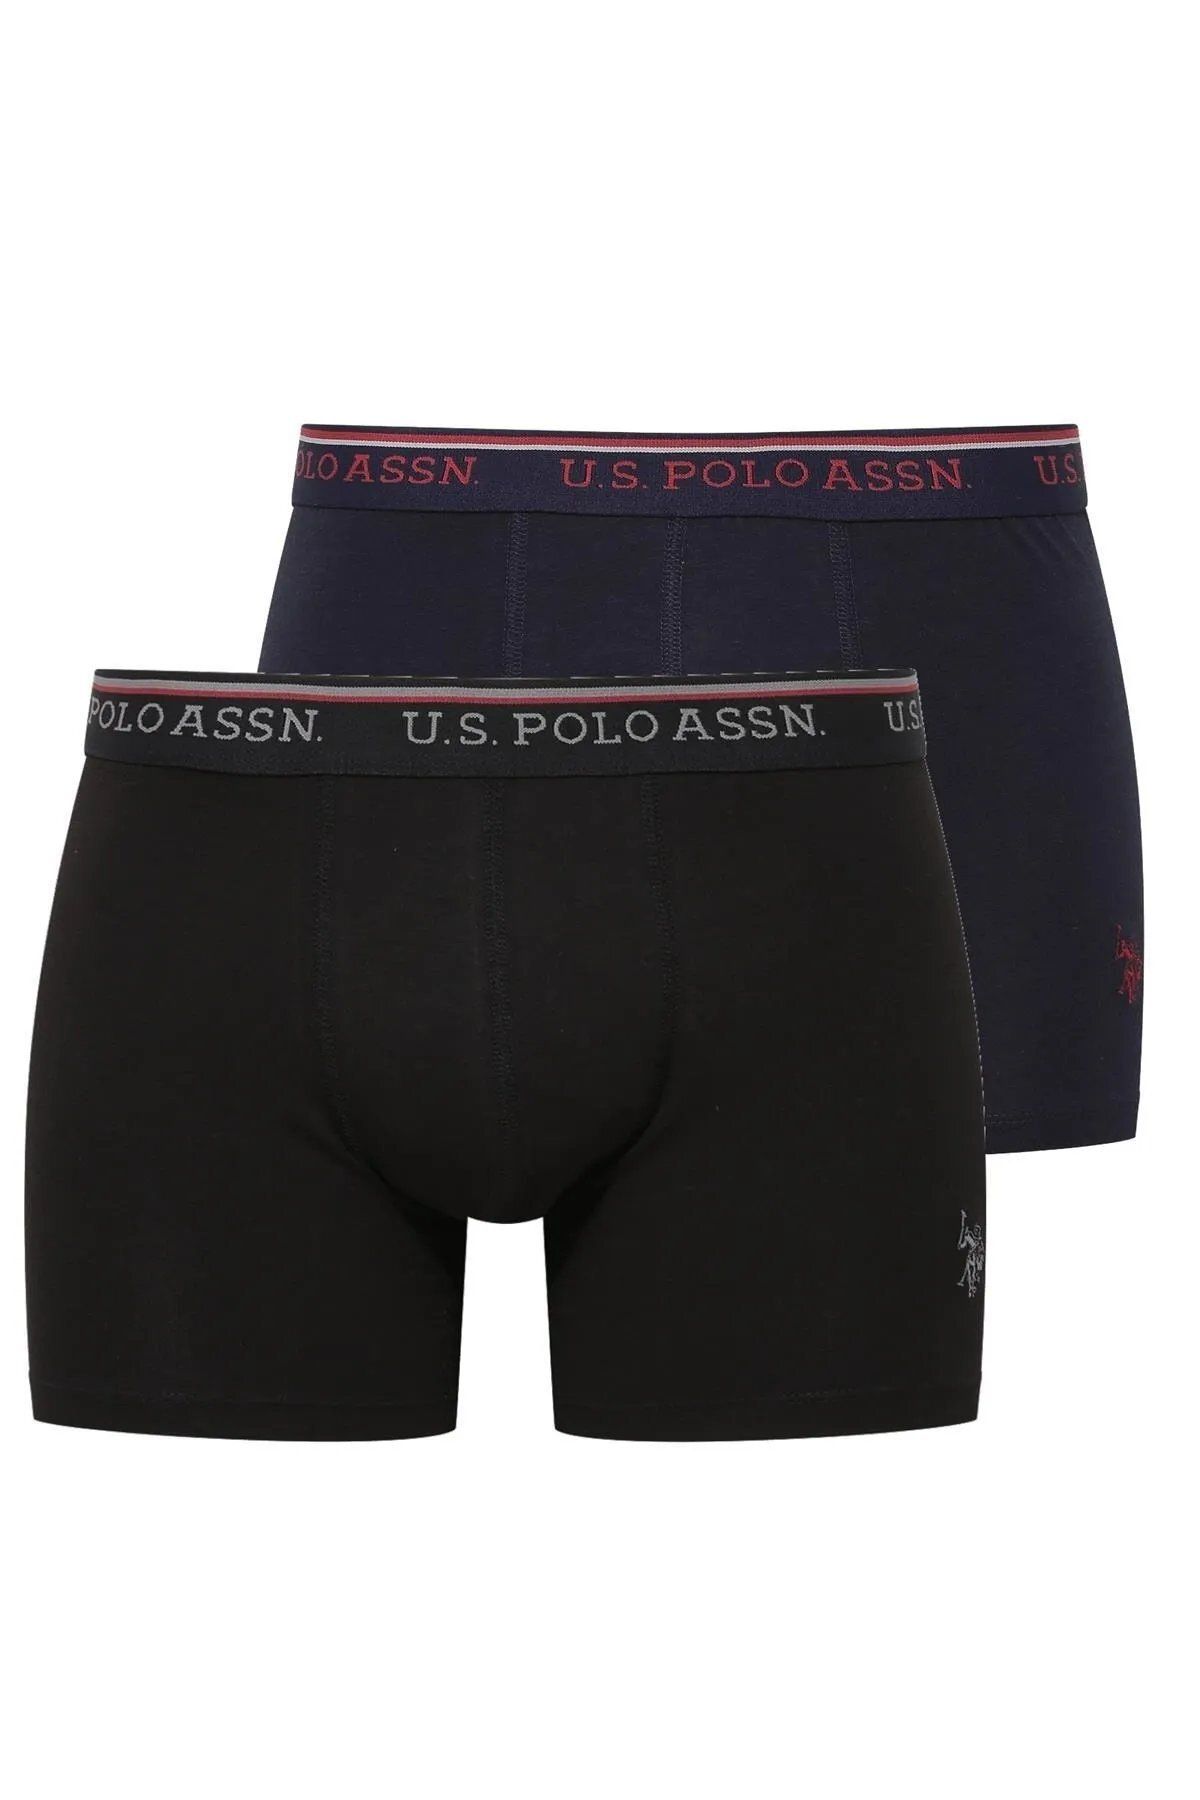 U.S. Polo Assn. U.S. Polo Assn. Düz Renk Ve Desenli, Modal Pamuk, 2'Lİ Erkek Boxer Paketi E.L.227.8.9I.28.F